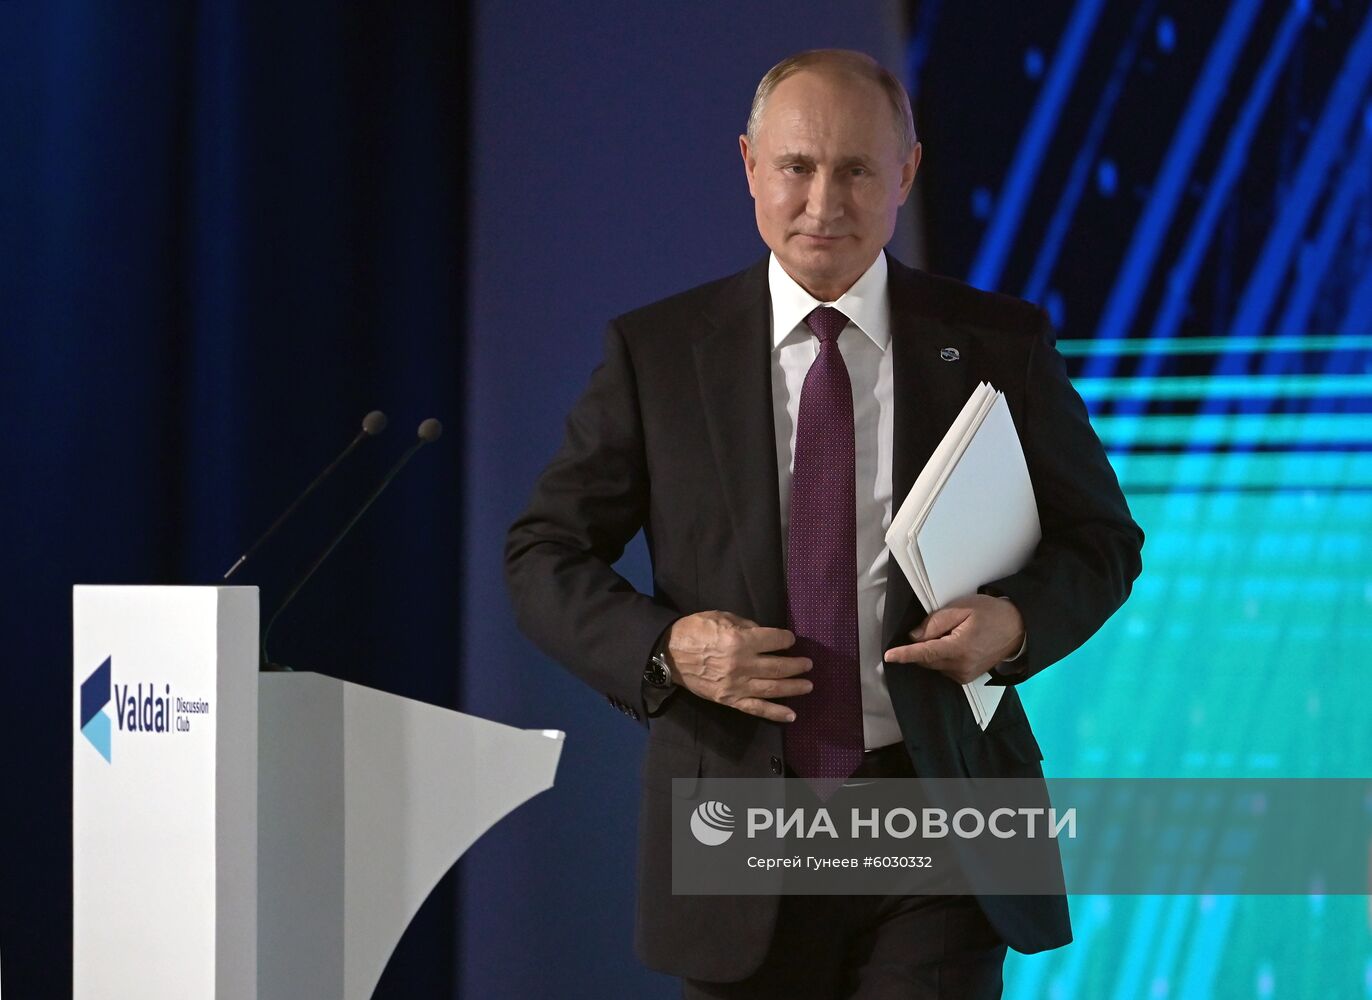 Рабочая поездка президента РФ В. Путина в Сочи